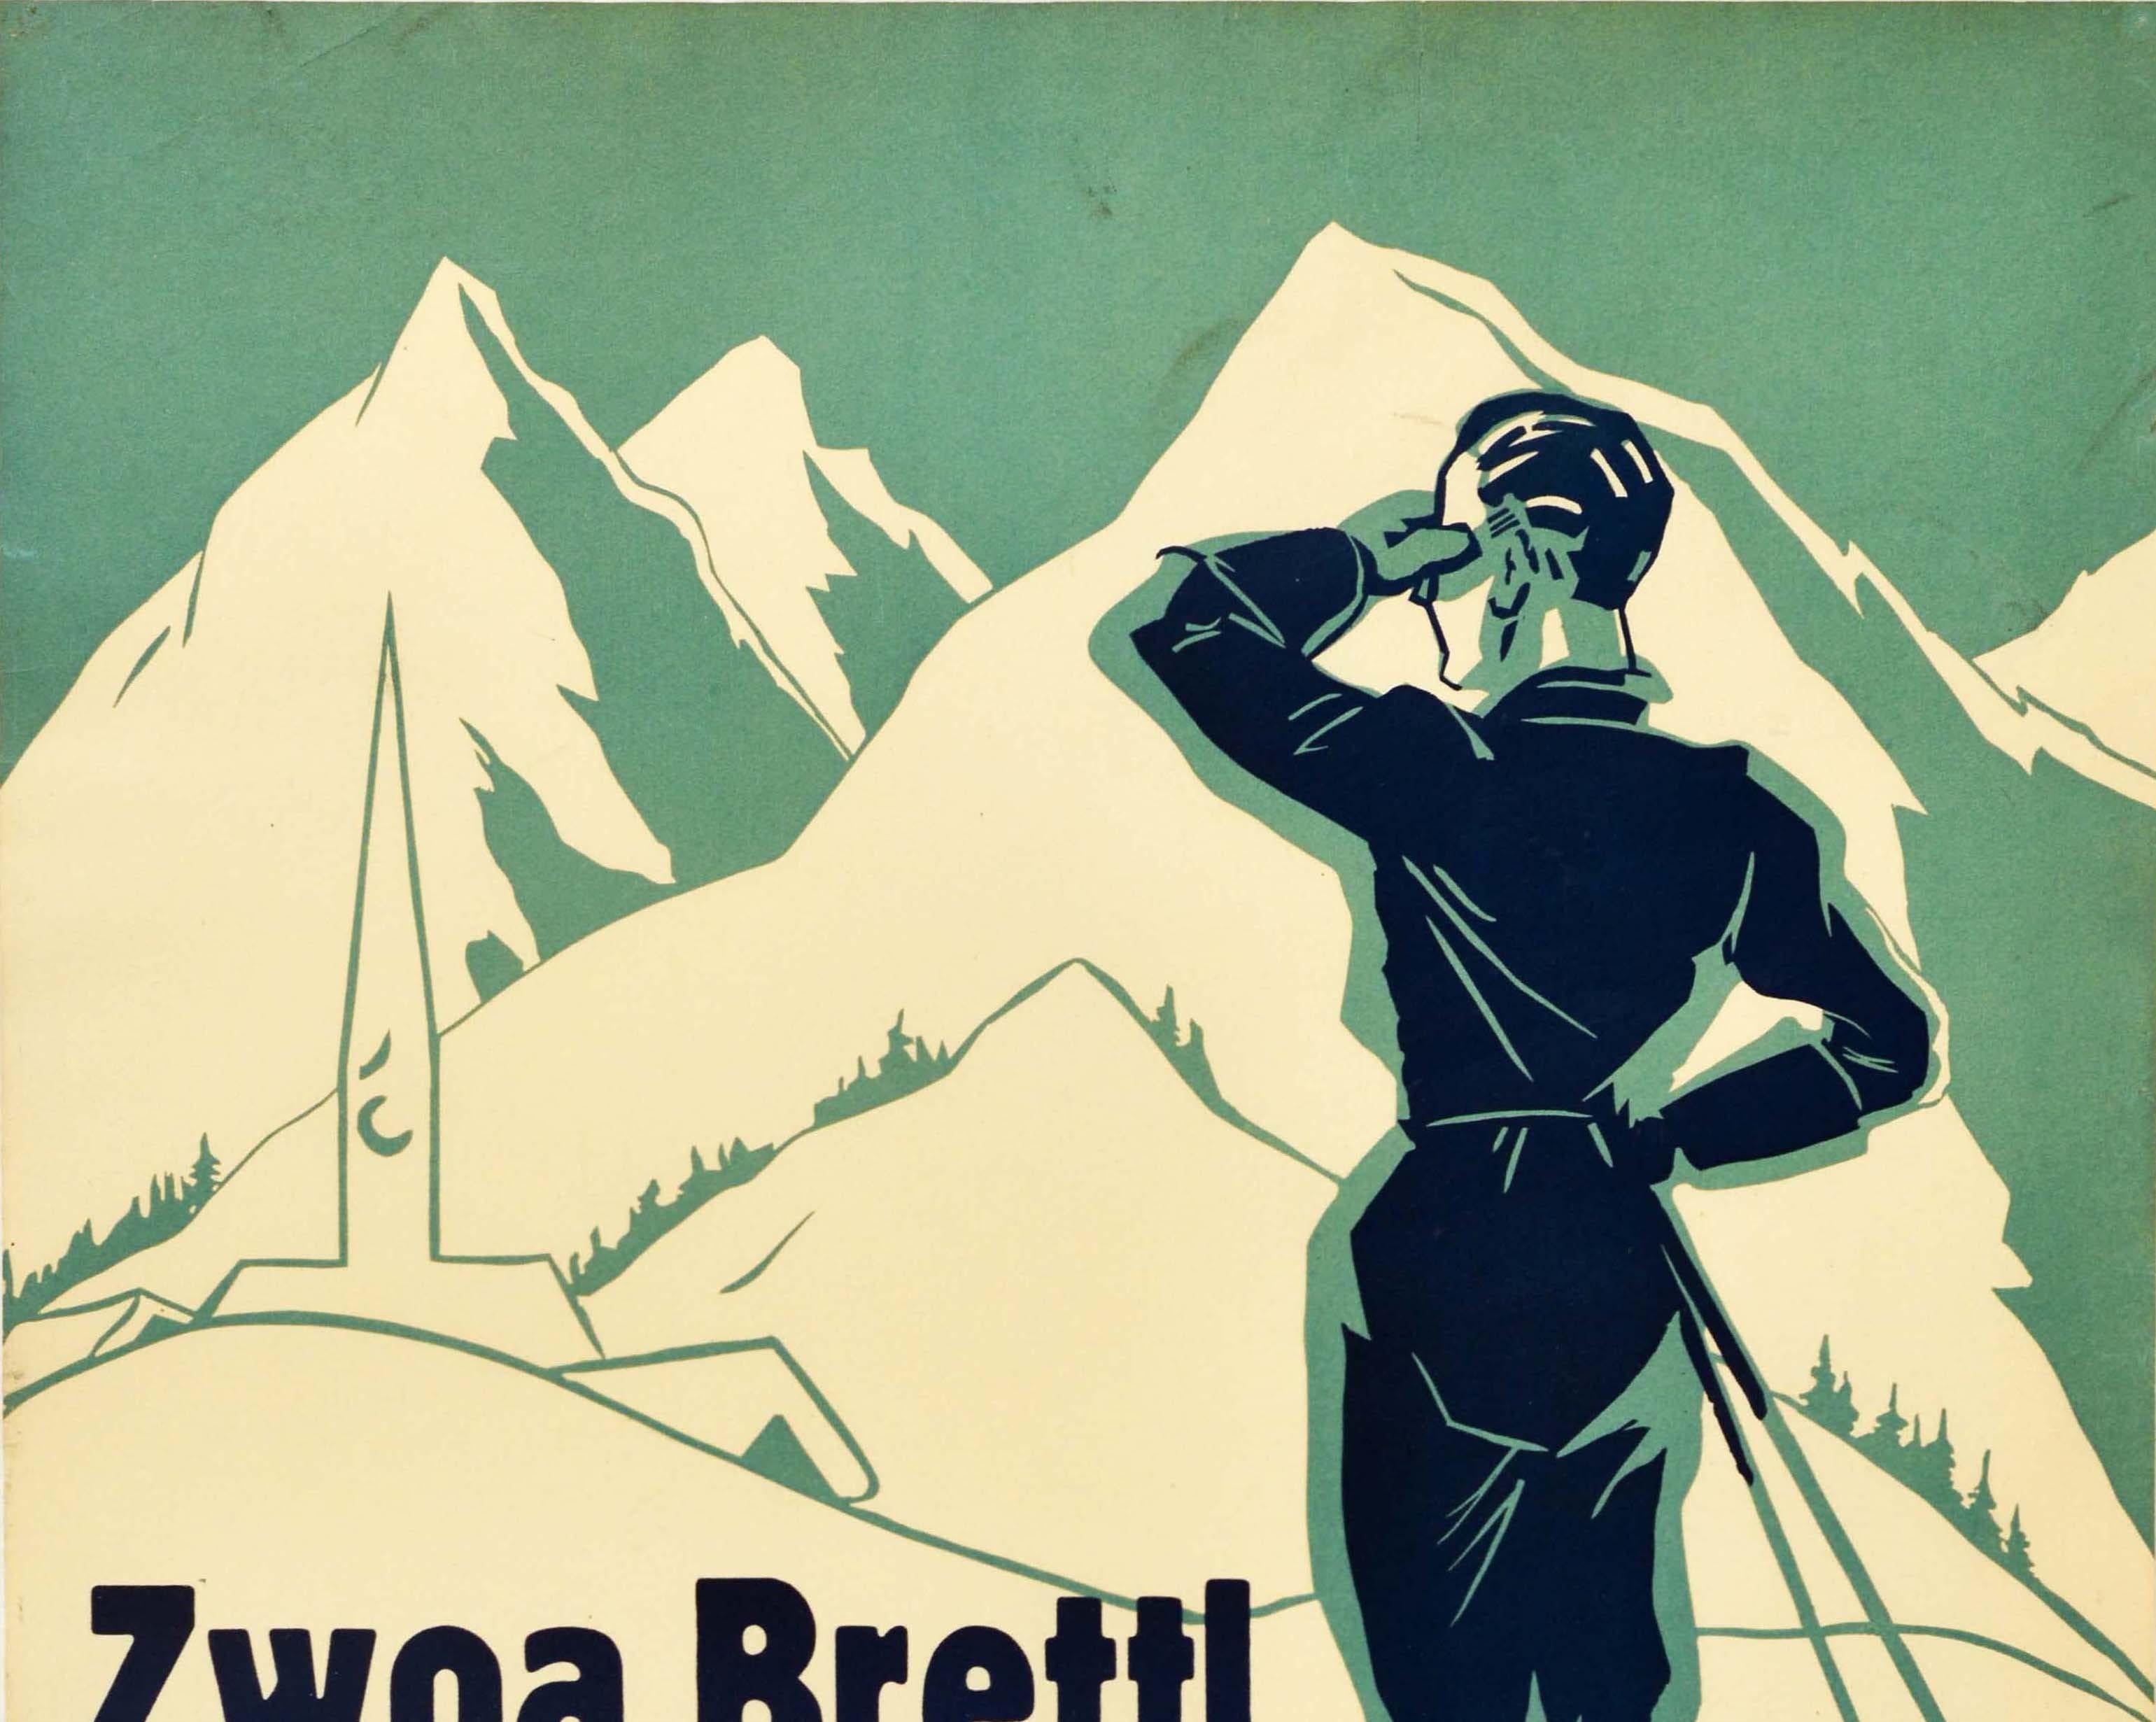 Original vintage movie poster for Zwoa Brettl a g'fugriger Schnee Erstauffuhrung eines Wintersportfilms am 18 Nov 1934 im Deulig-Palast Magdeburg zur Reichssport- Winter-Werbewoche Reisedienst 